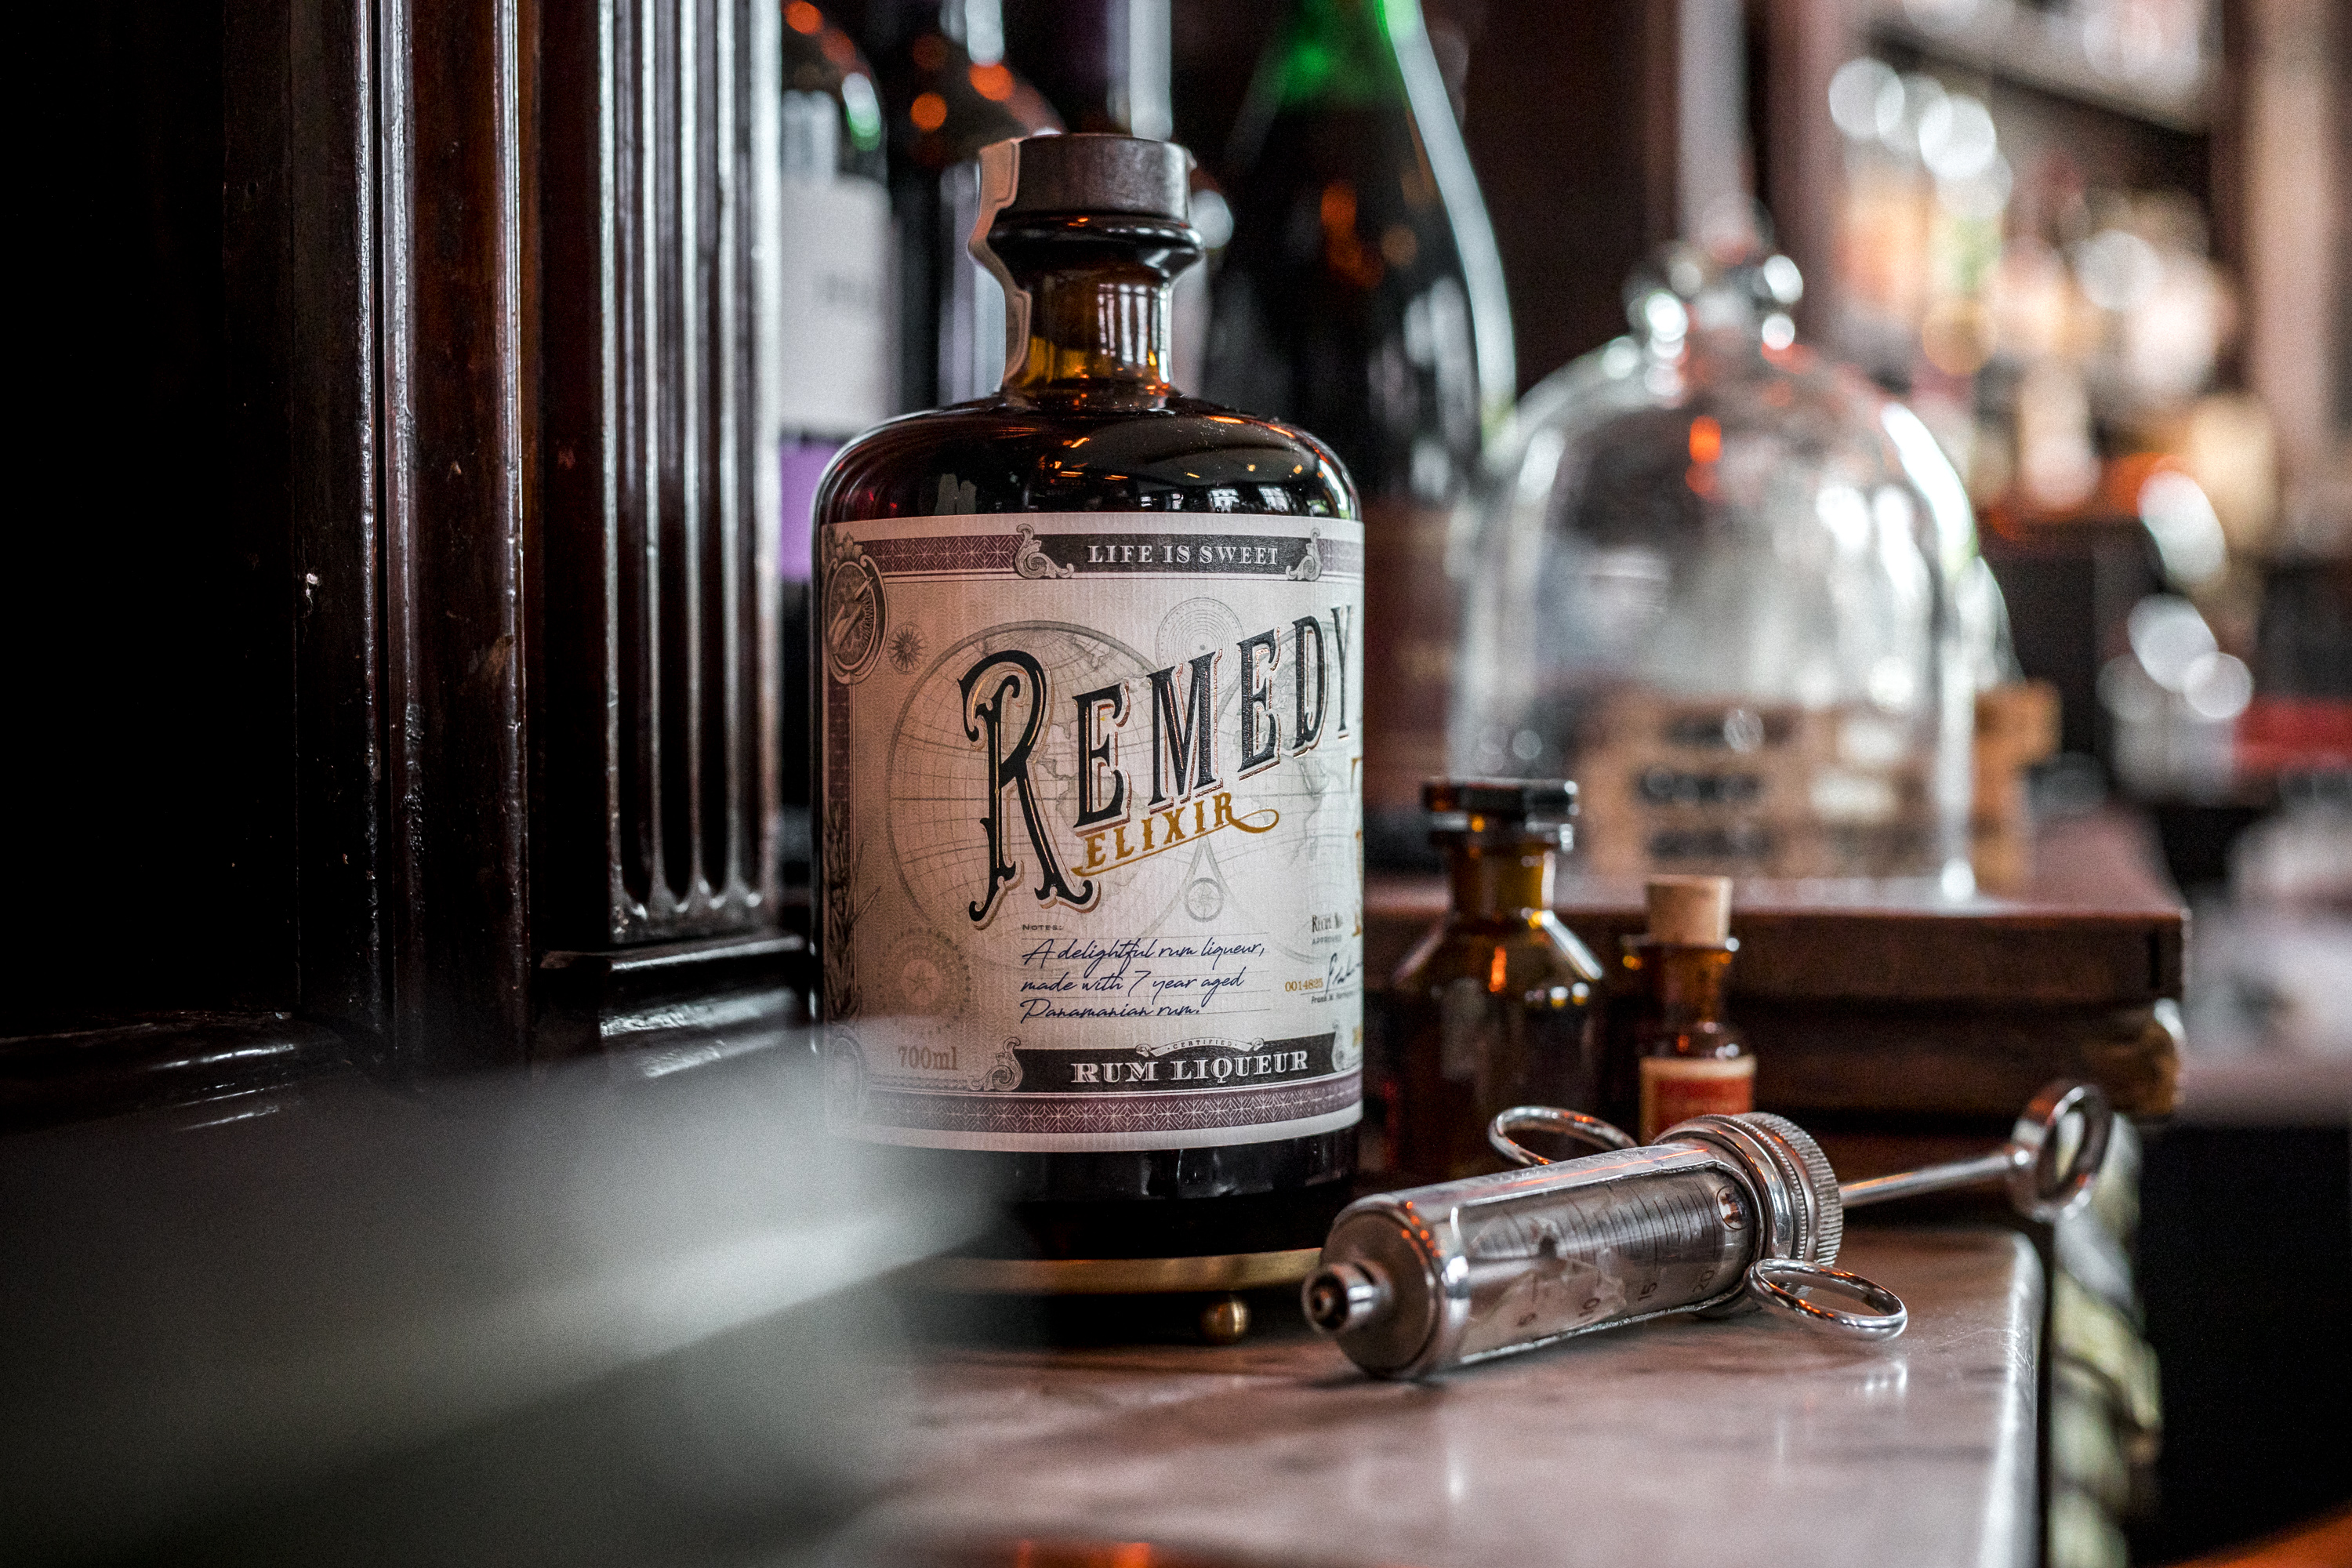 Remedy Elixir Rum Liqueur 34% 0,7l